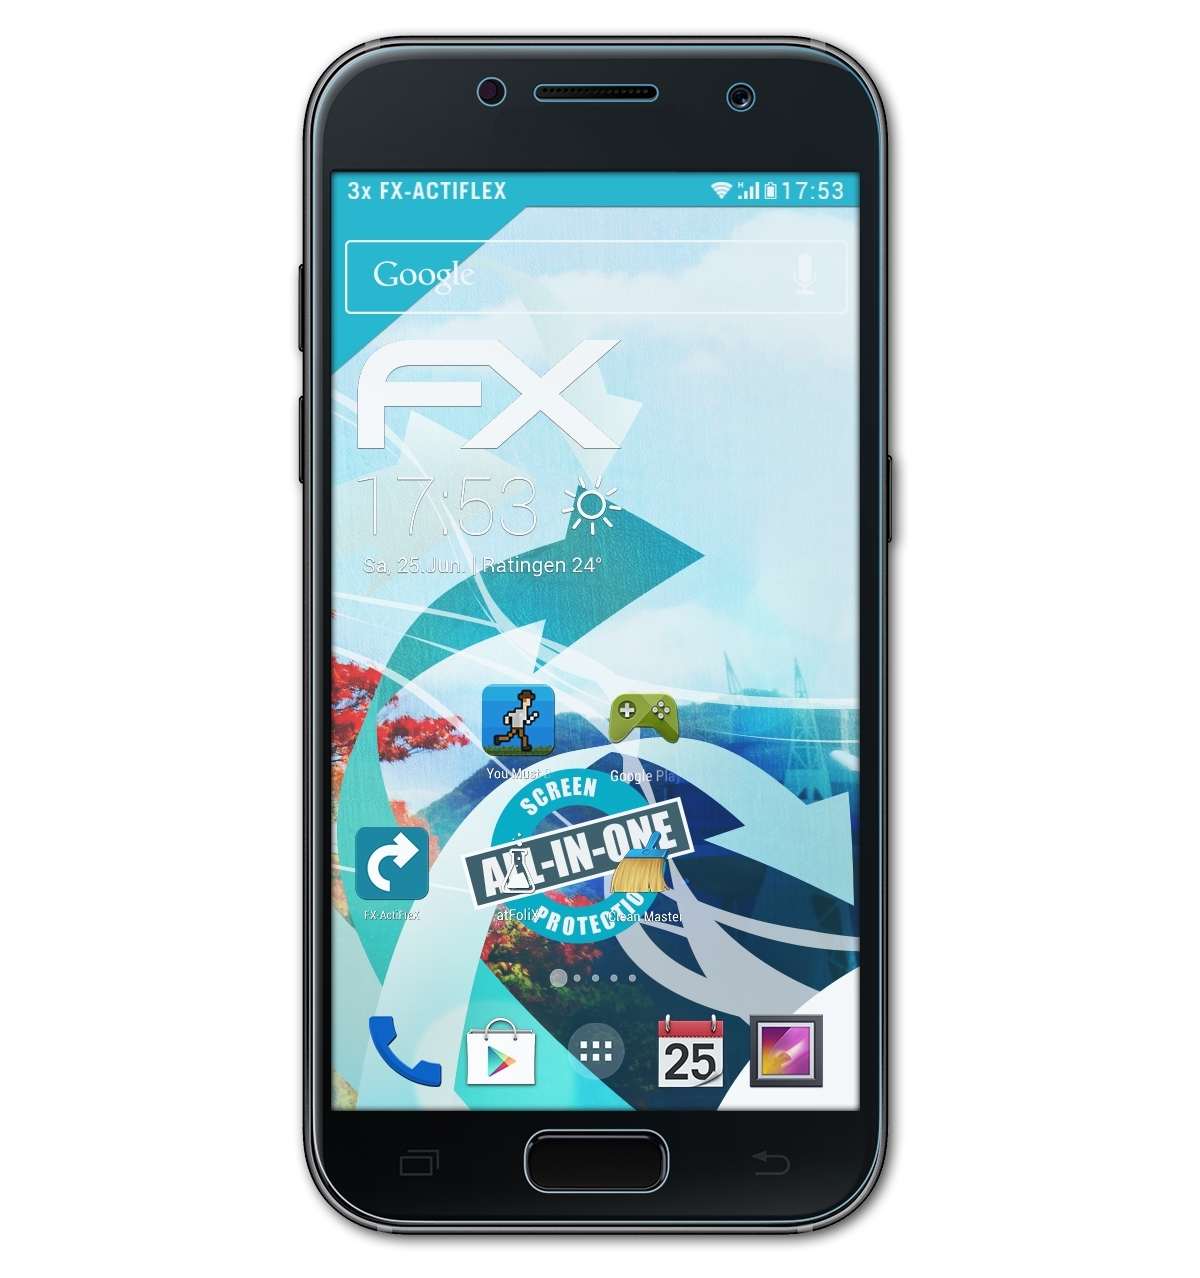 Samsung Galaxy ATFOLIX Displayschutz(für A3 (2017) Front) FX-ActiFleX 3x